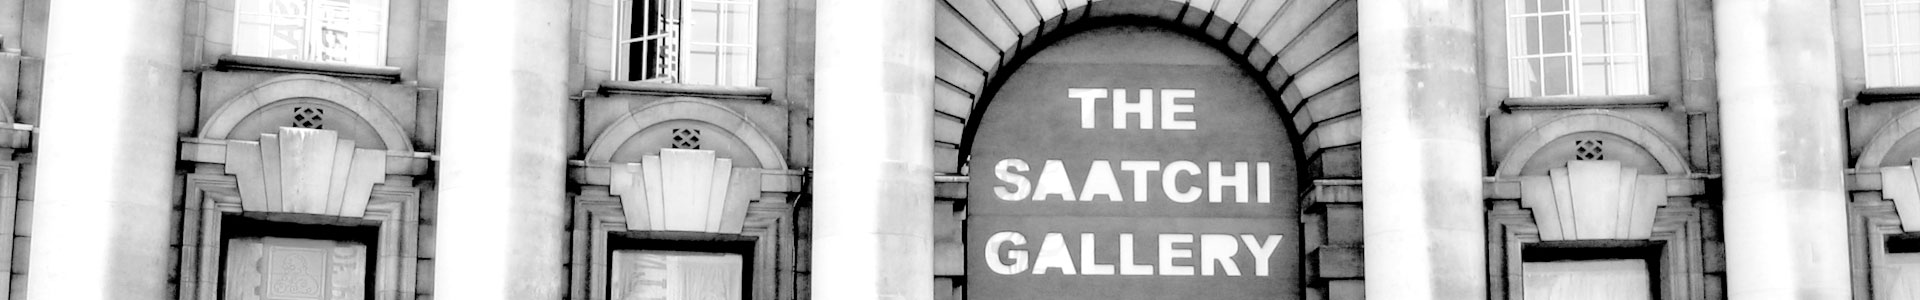 Saatchi Gallery